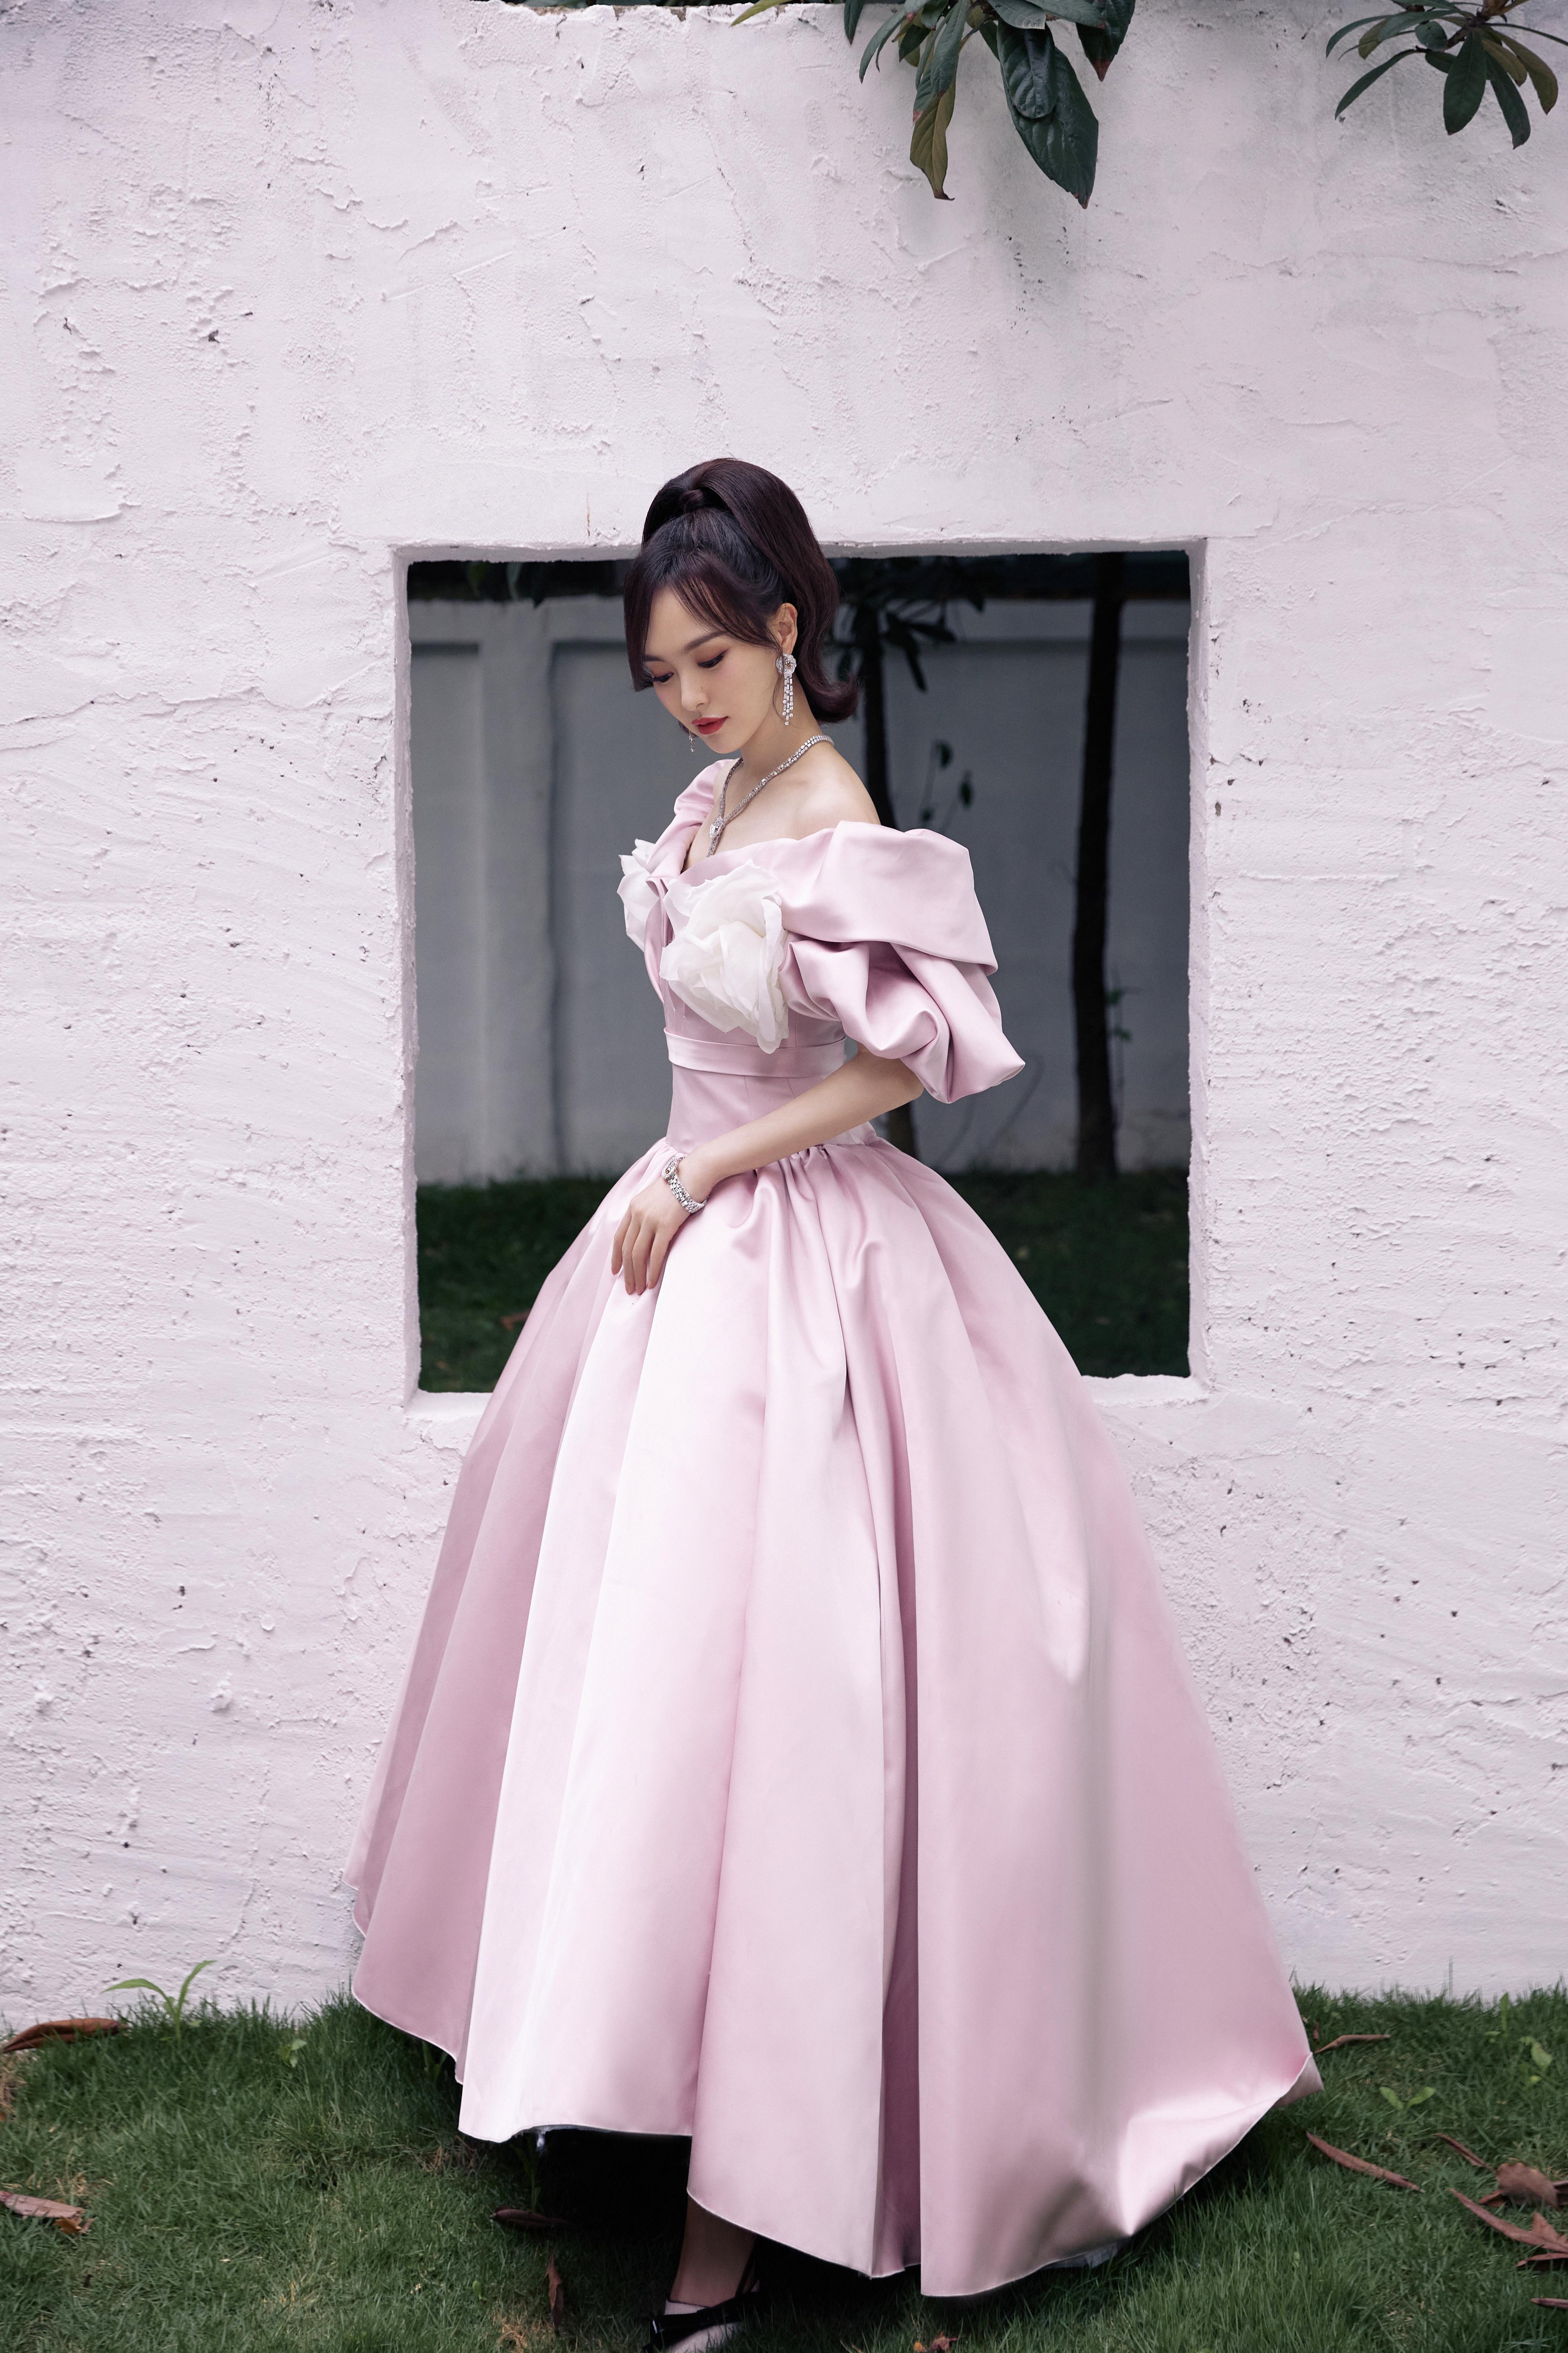 唐嫣粉色束腰裙造型复古优雅 白色大花朵点缀温柔甜美,1 (3)